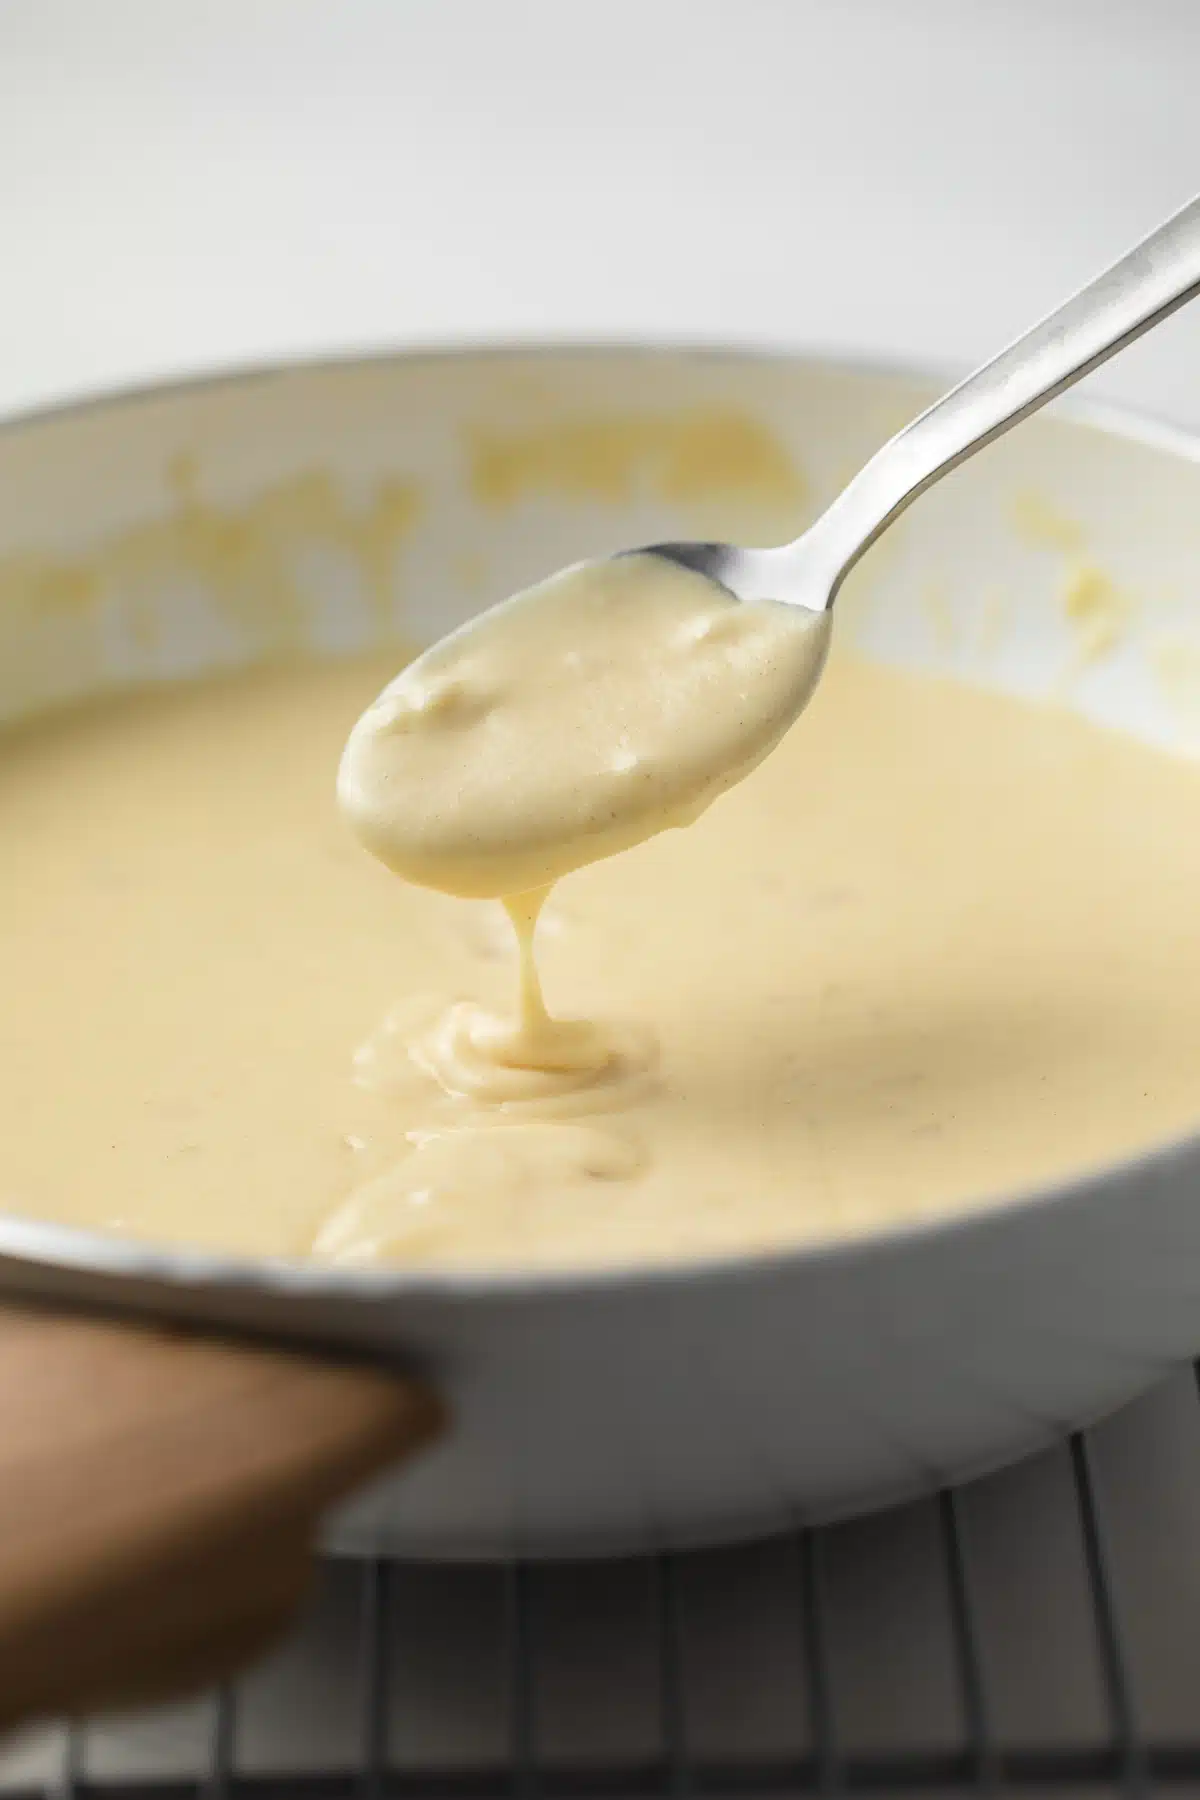 Dijon mustard sauce on a spoon.